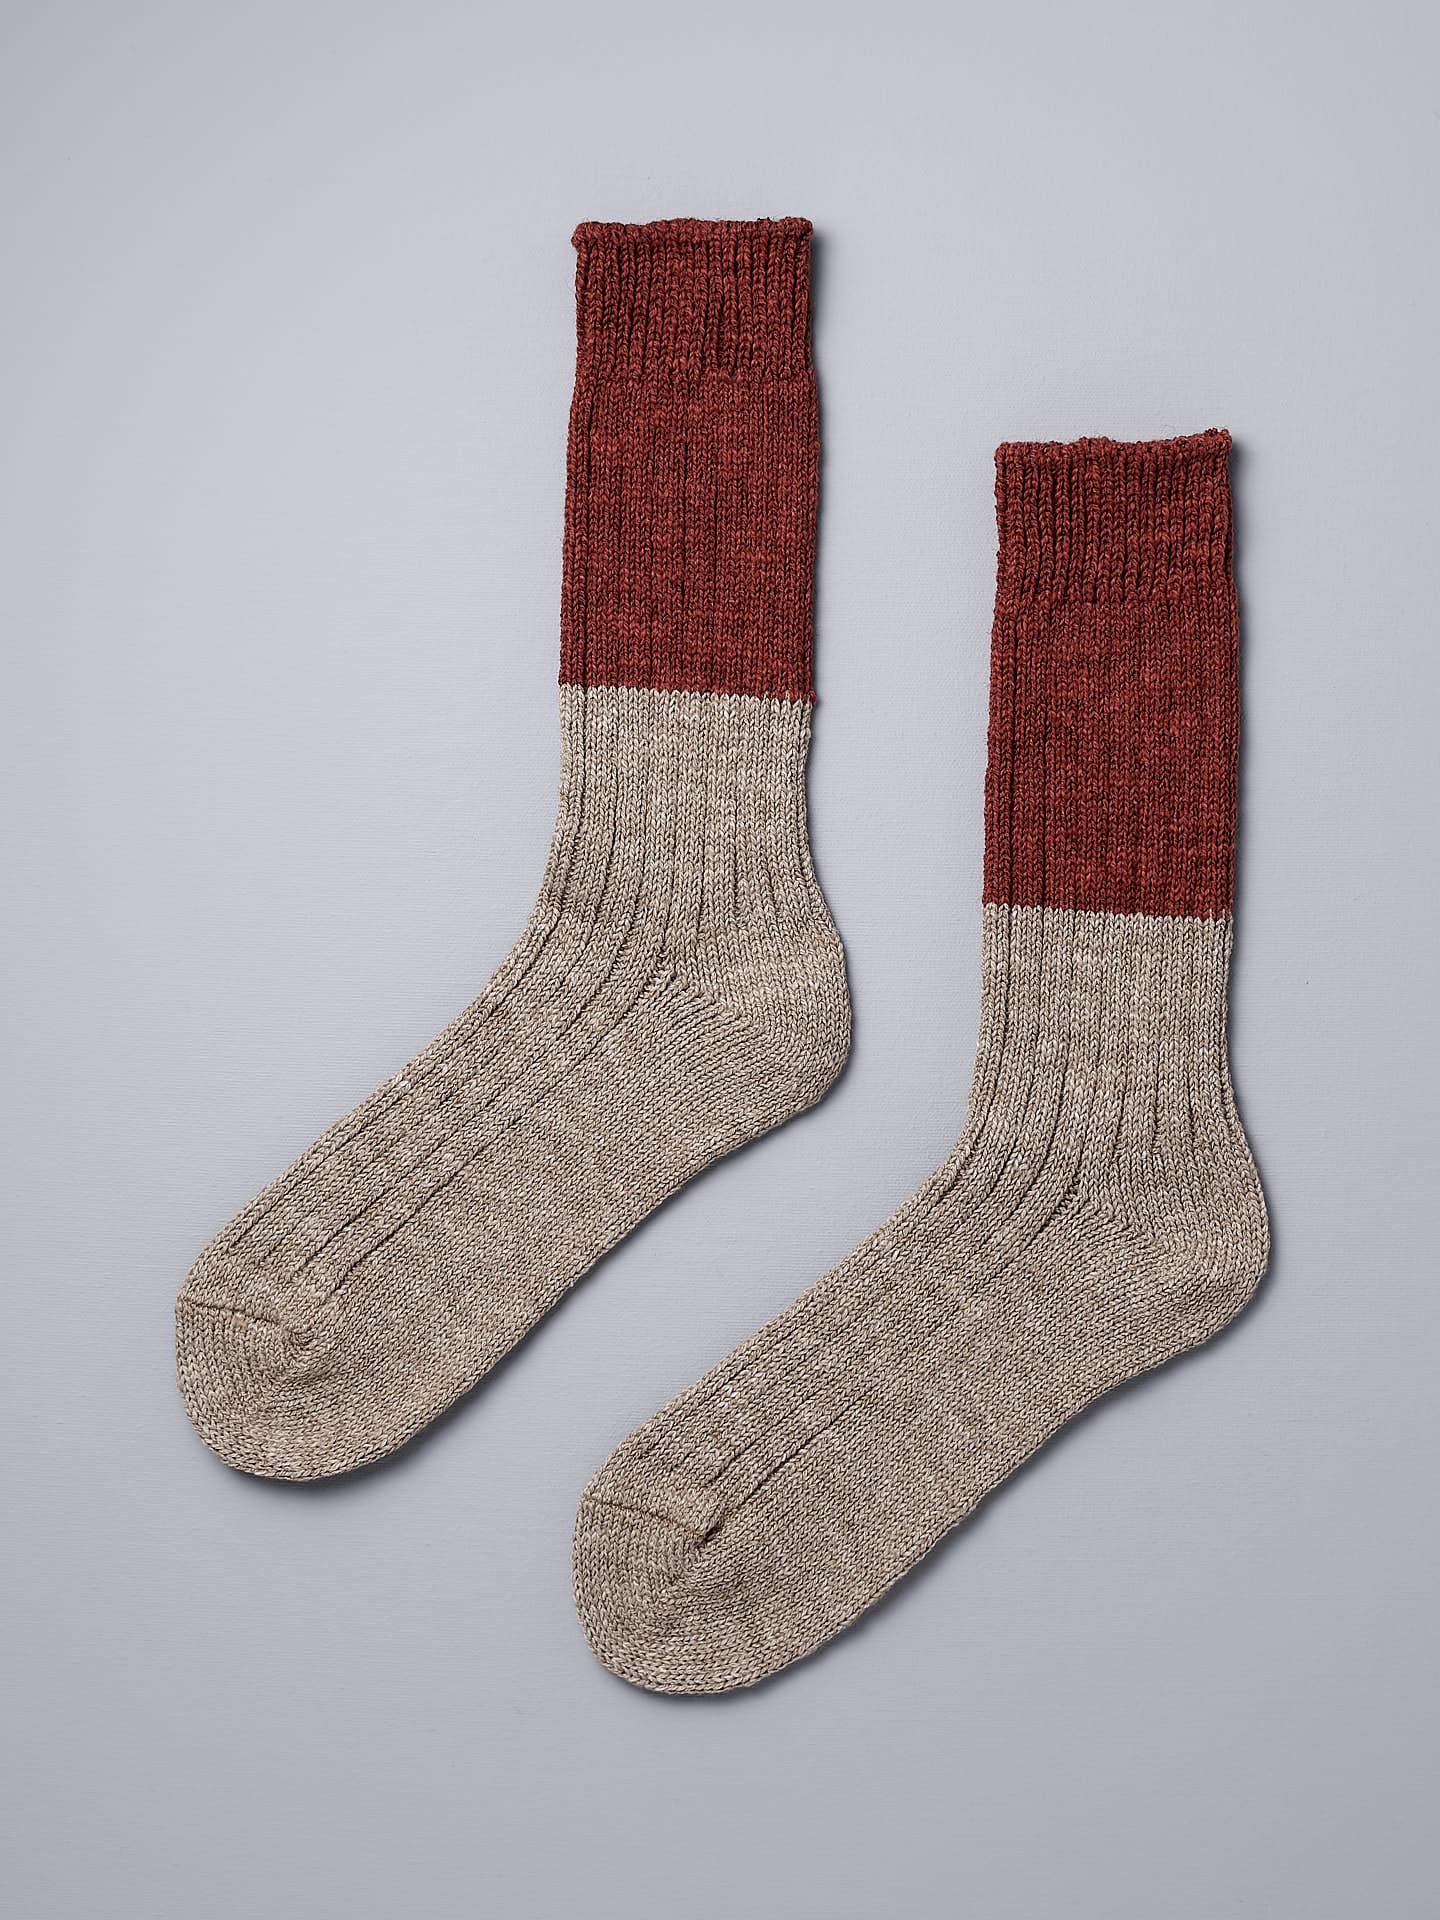 A pair of Boston Slab Socks – Red Brick by Nishiguchi Kutsushita on a grey background.